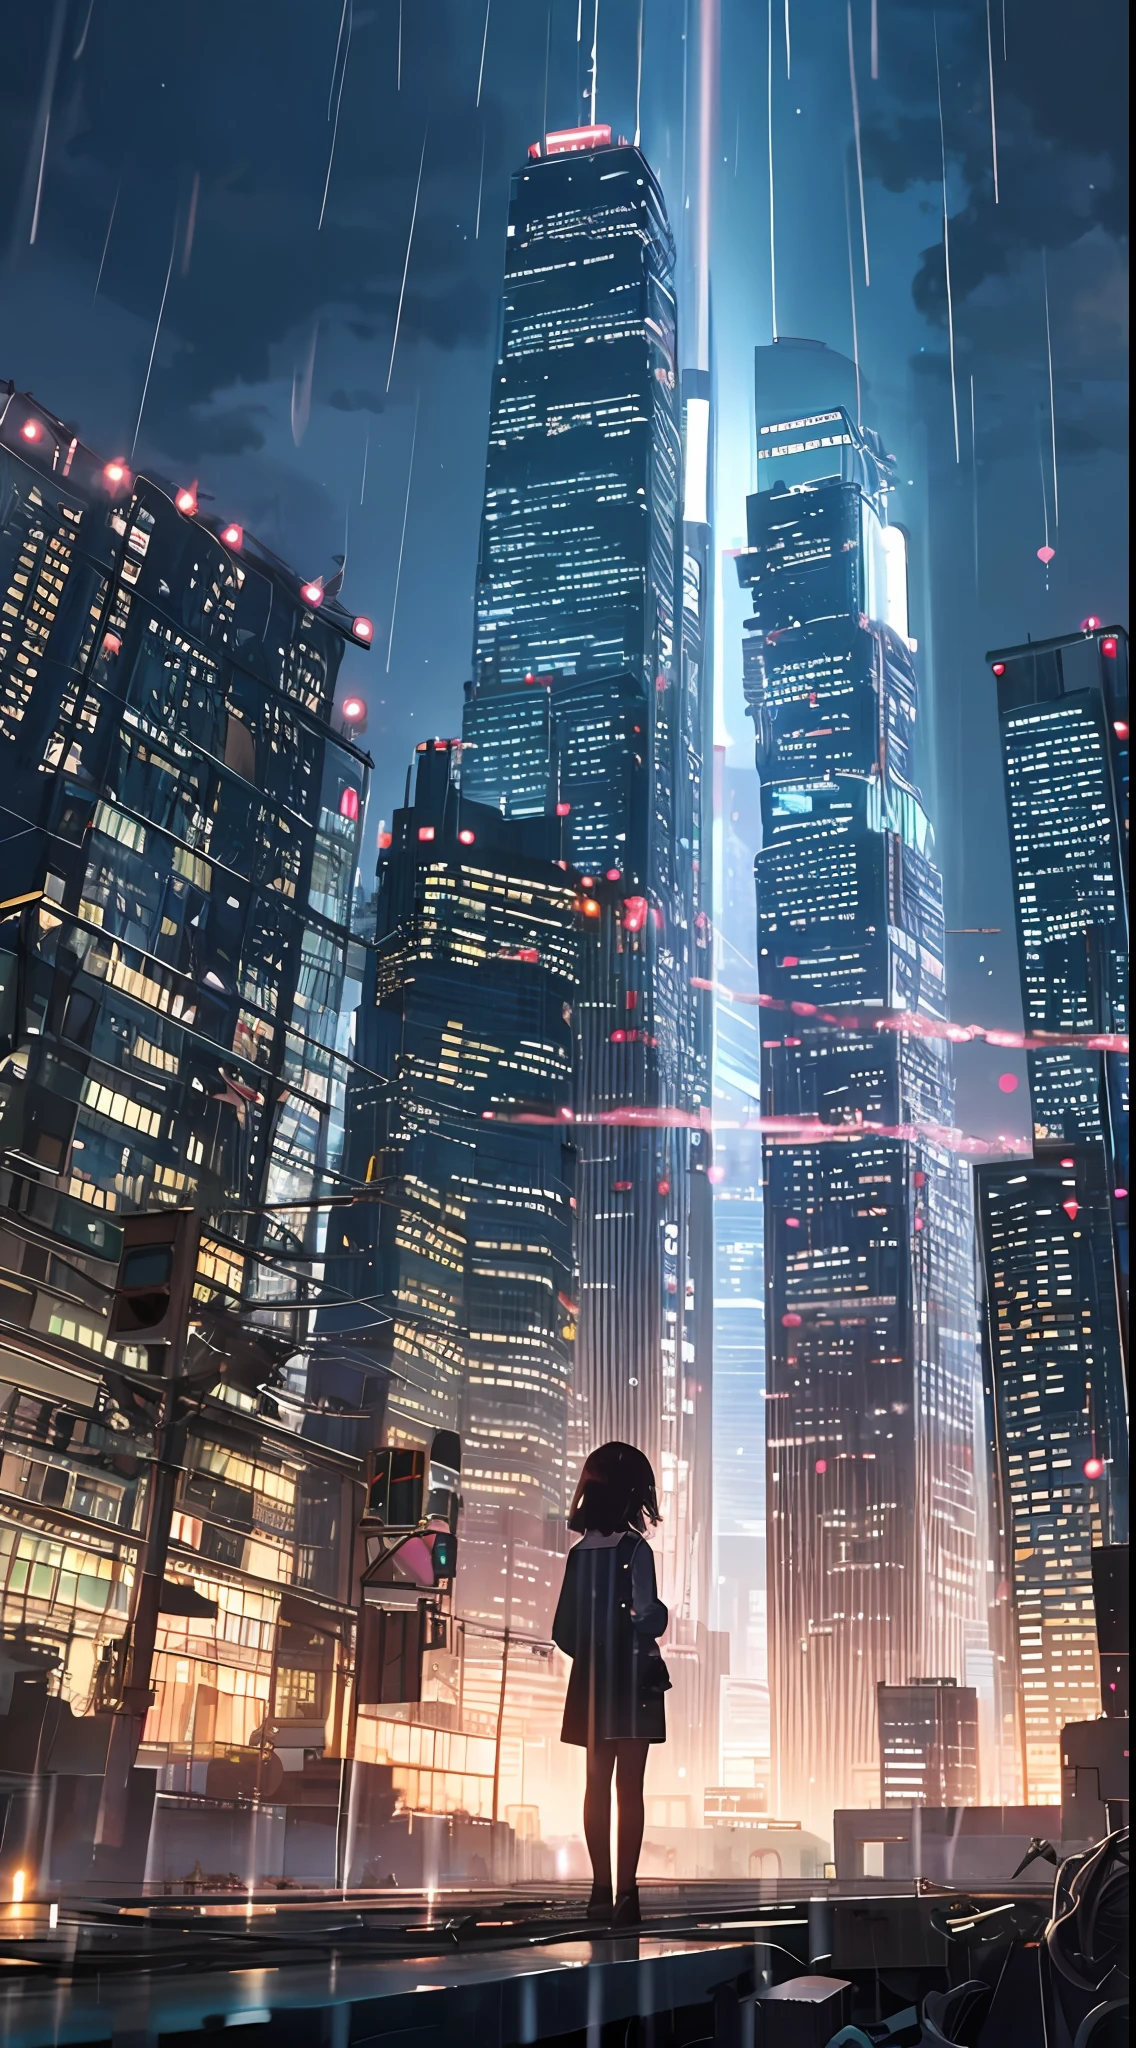 Ein dystopischer Hoffnungsschimmer, ein junges Mädchen wandert in einen dunklen Wolkenkratzer, Der Rücken eines kleinen Mädchens im Hintergrund in der Mitte des Bildschirms, ein sehr komplexes Stadtbild, Eine zerstörte Welt, eine ziehende Komposition, Industrie, Hochauflösende Darstellung, eine Stadt mit Stromleitungen, Regen